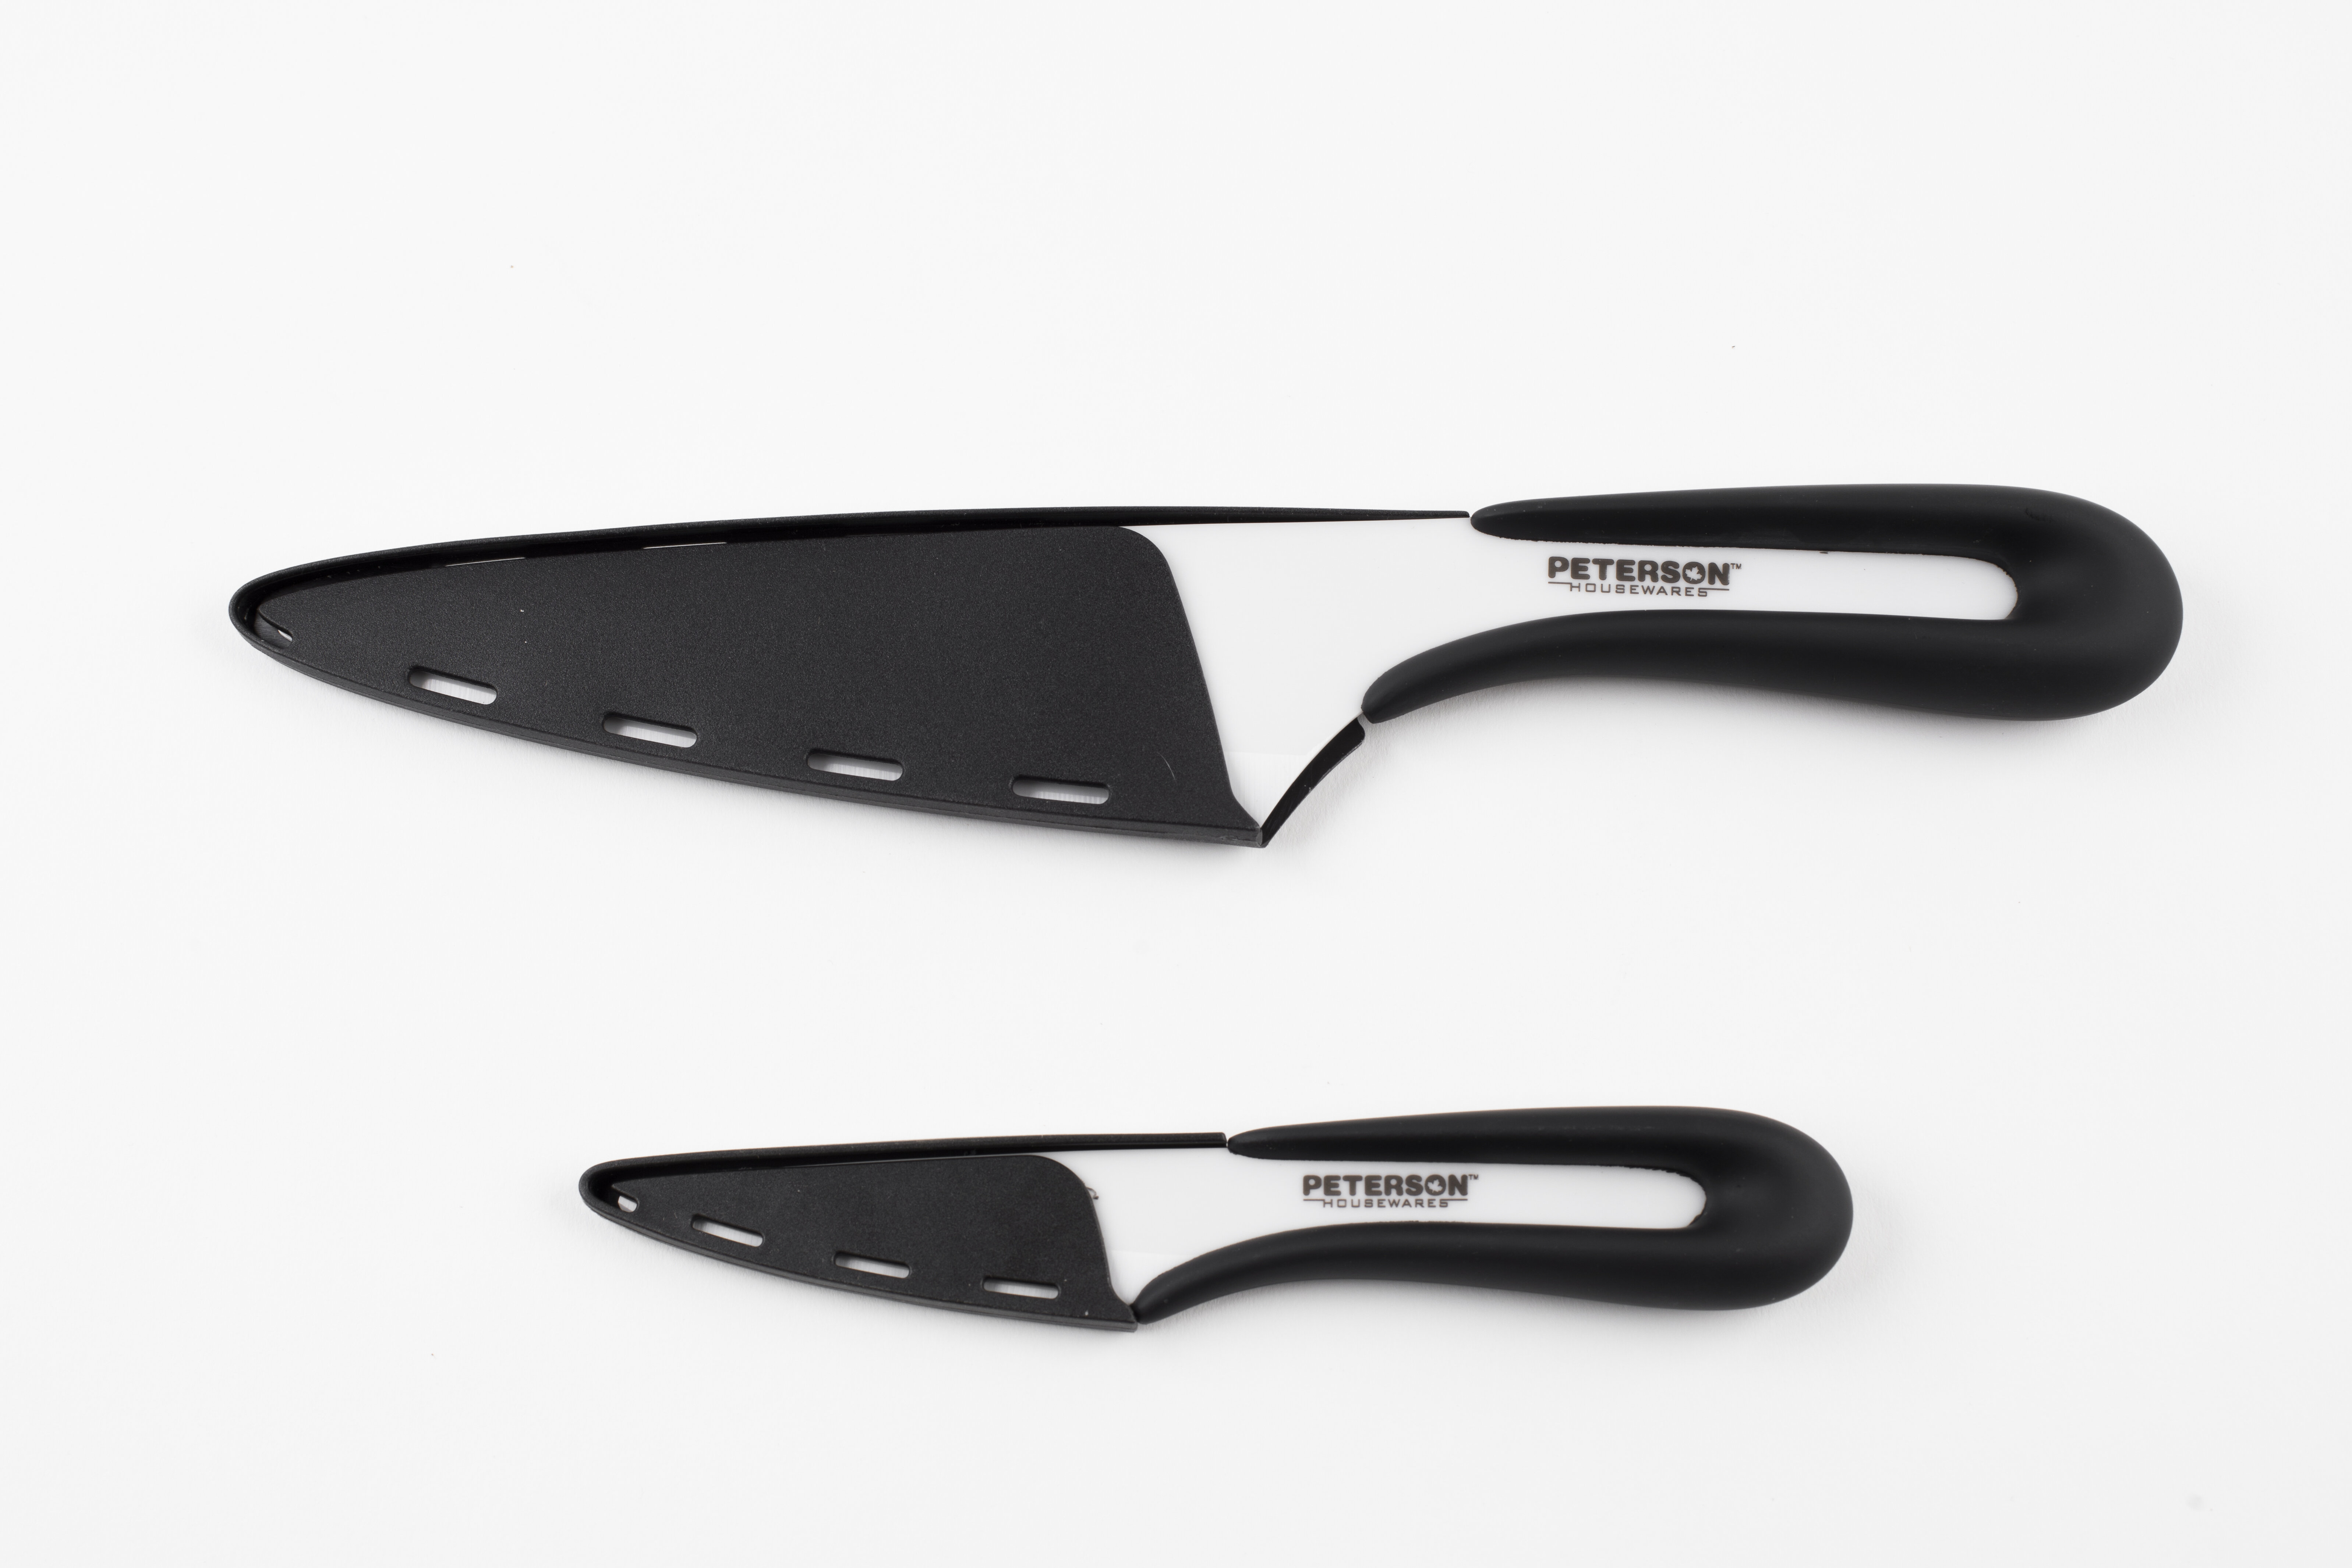 Peterson Housewares Utility Knife Block, White